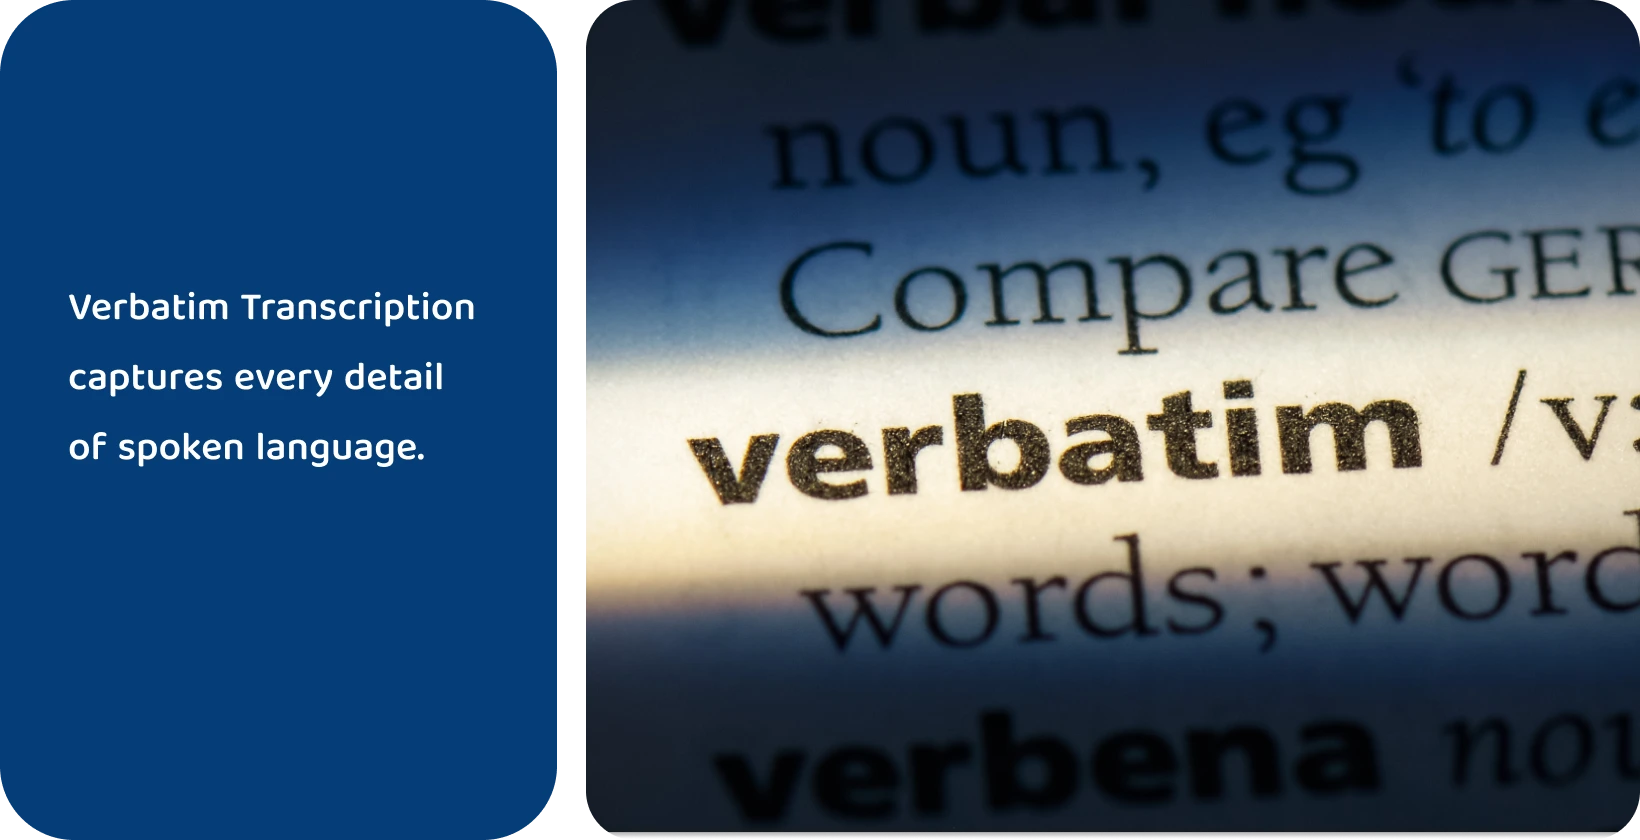 Zaznaczono w słowniku słowo "verbatim", reprezentujące precyzyjne metody transkrypcji.